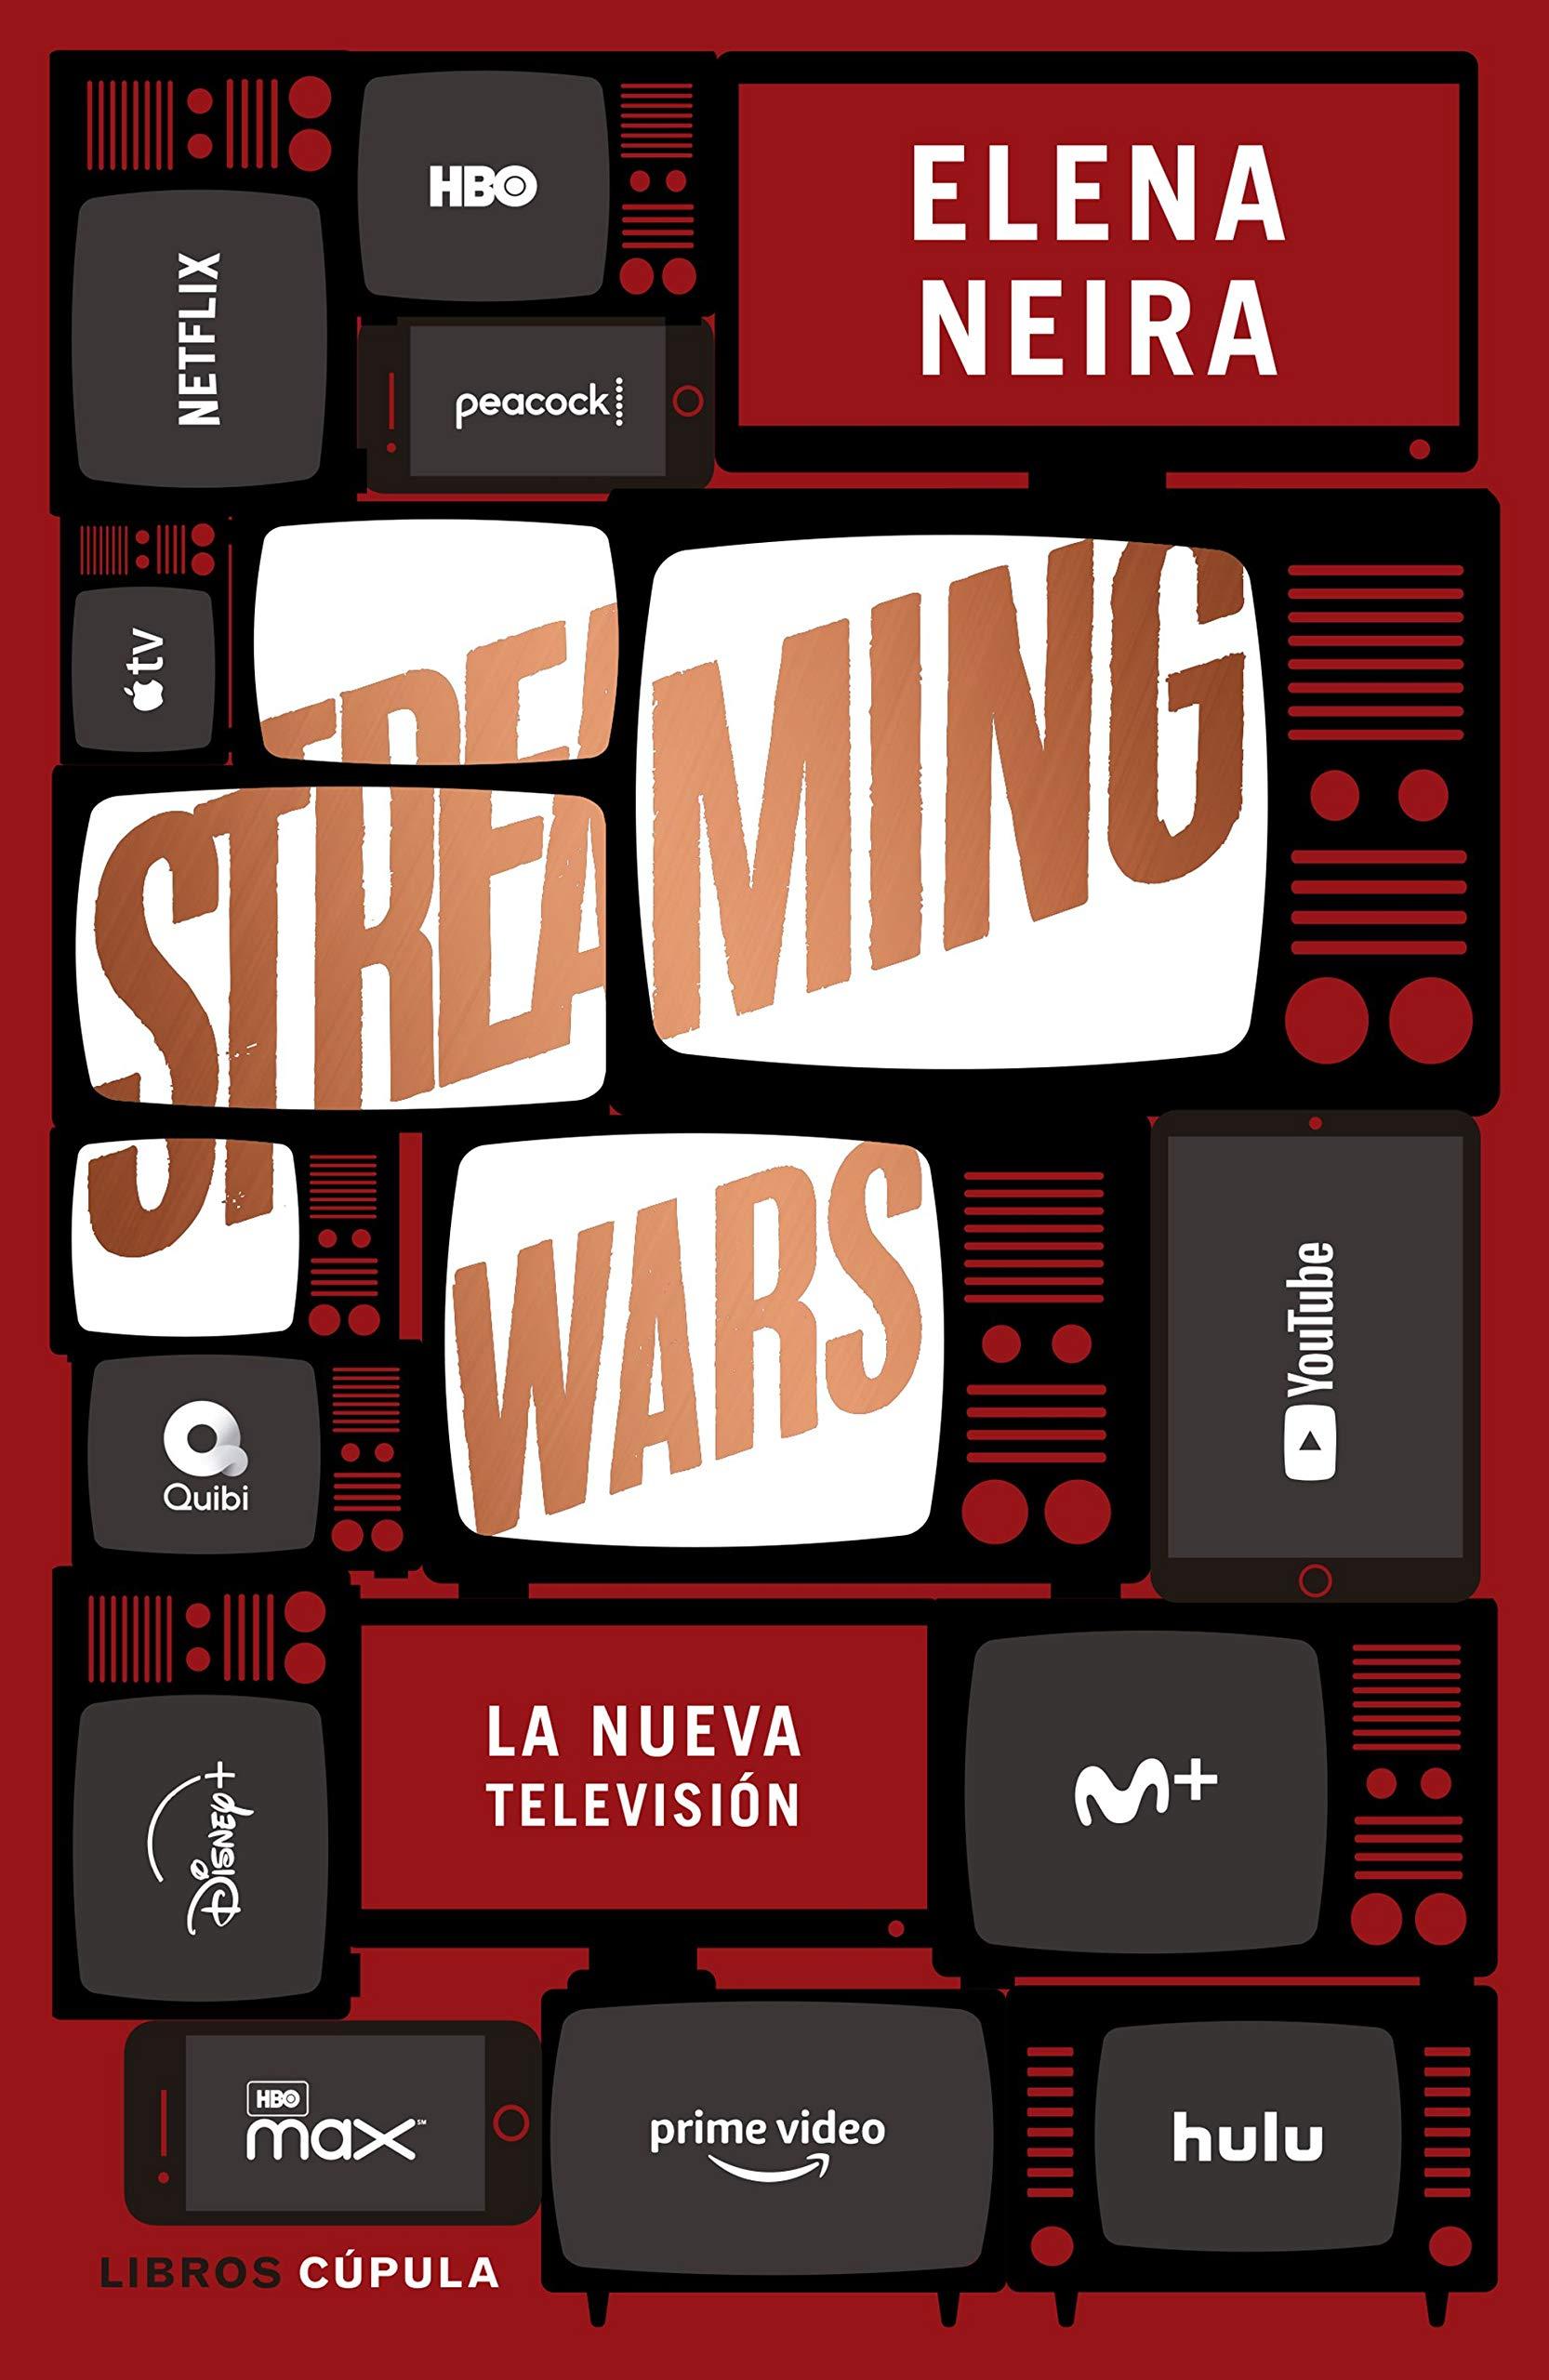 Su último libro, Streaming Wars: la nueva televisión (Libros Cúpula, 2020).